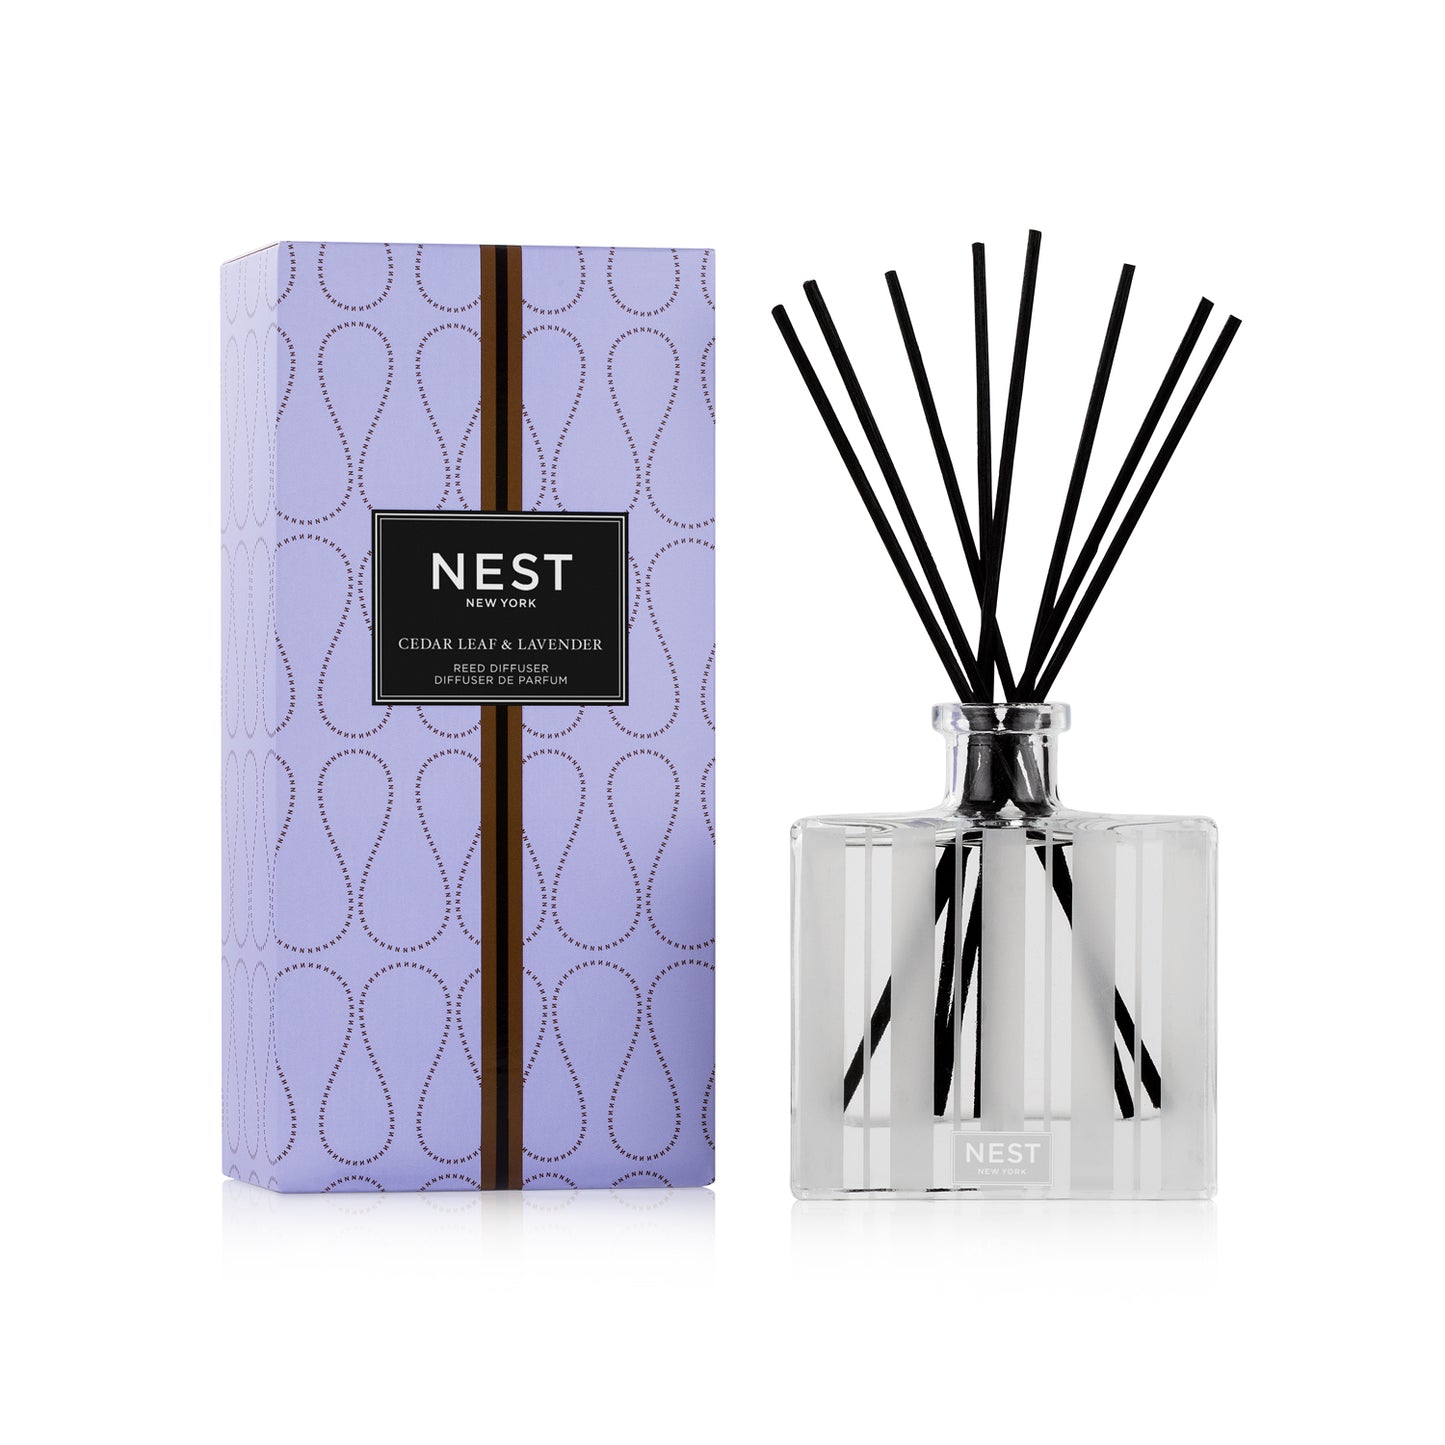 NEST Fragrances, Cedar Leaf and Lavender Reed Diffuser